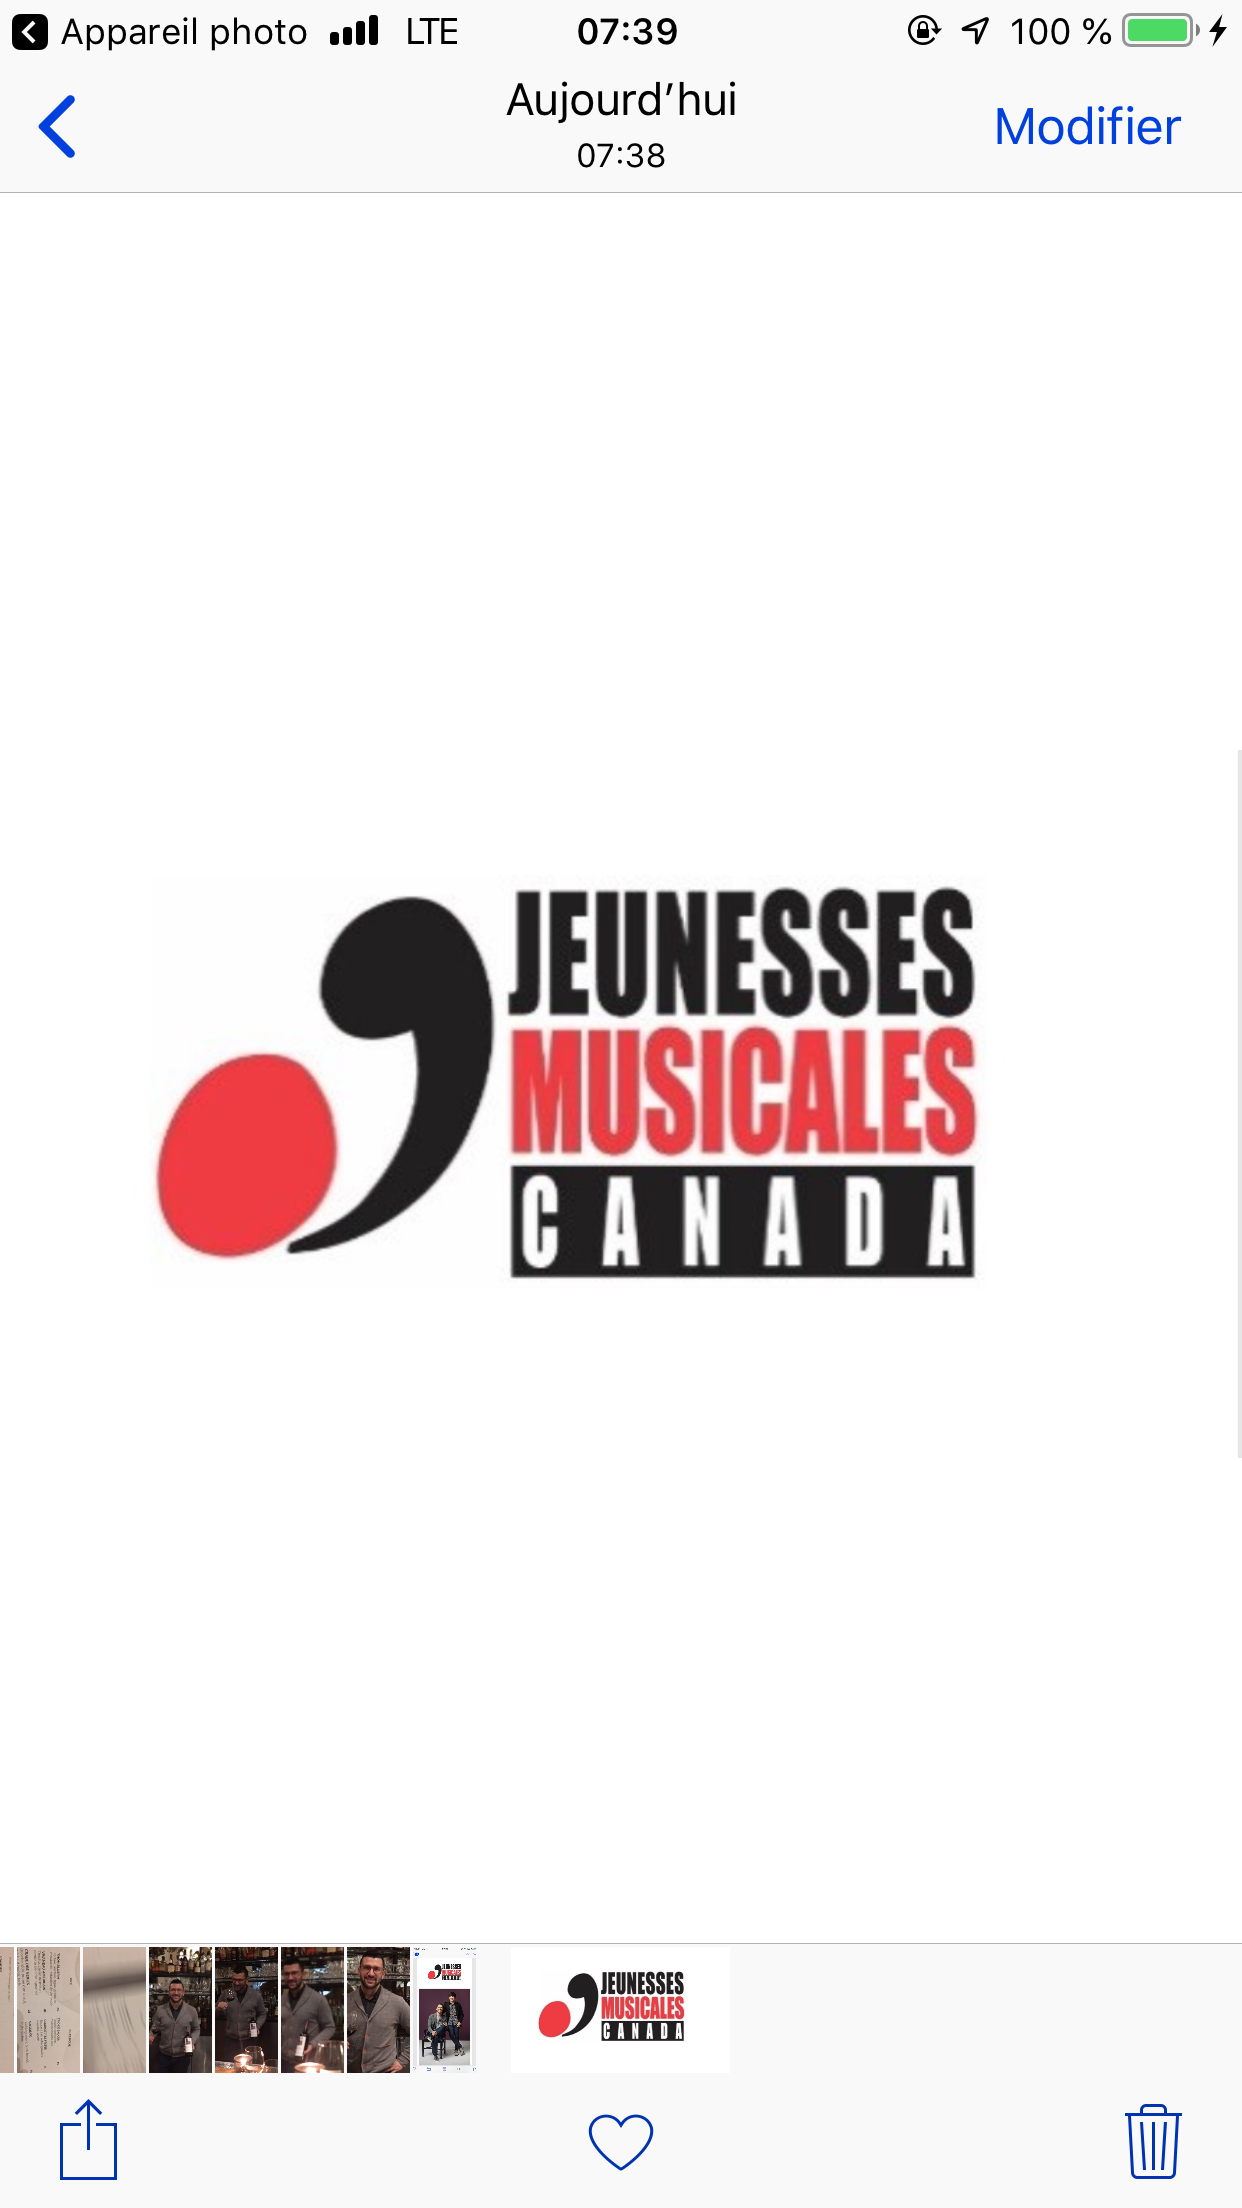 Jeunesses musicales Canada - capture d'écran.